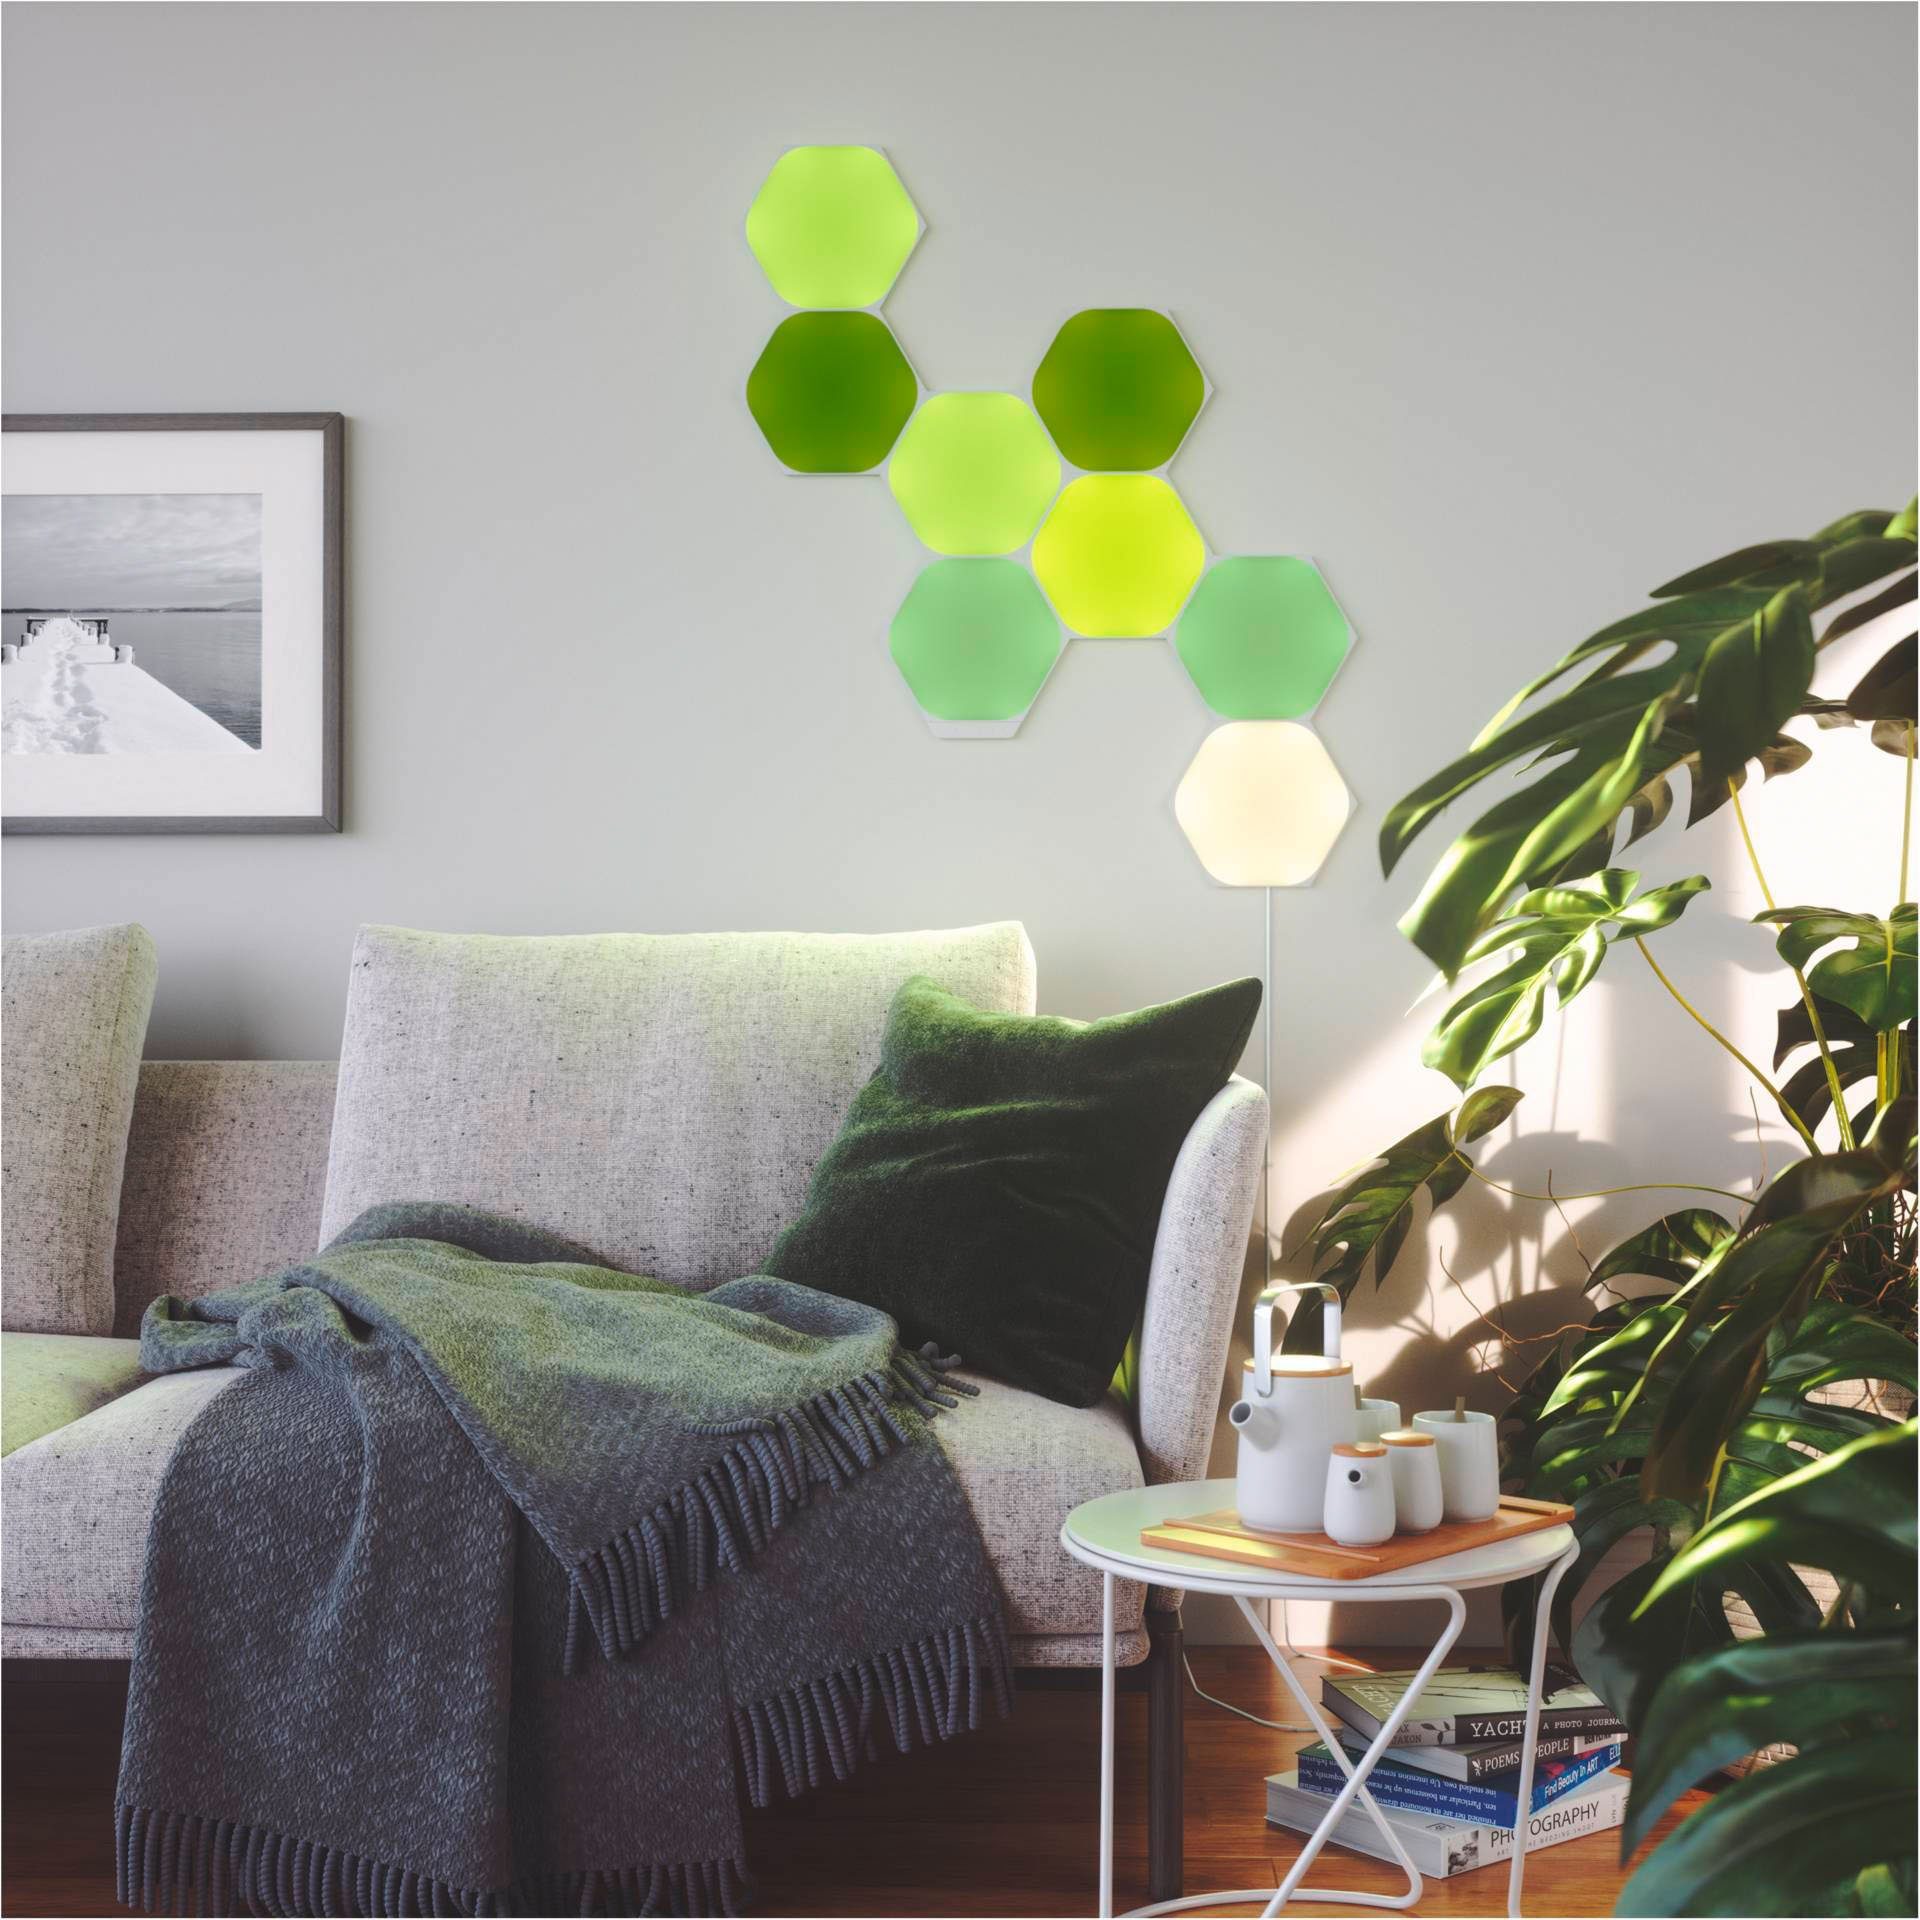 nanoleaf LED Panel Shapes fest integriert, LED Farbwechsler Hexagons, Dimmfunktion